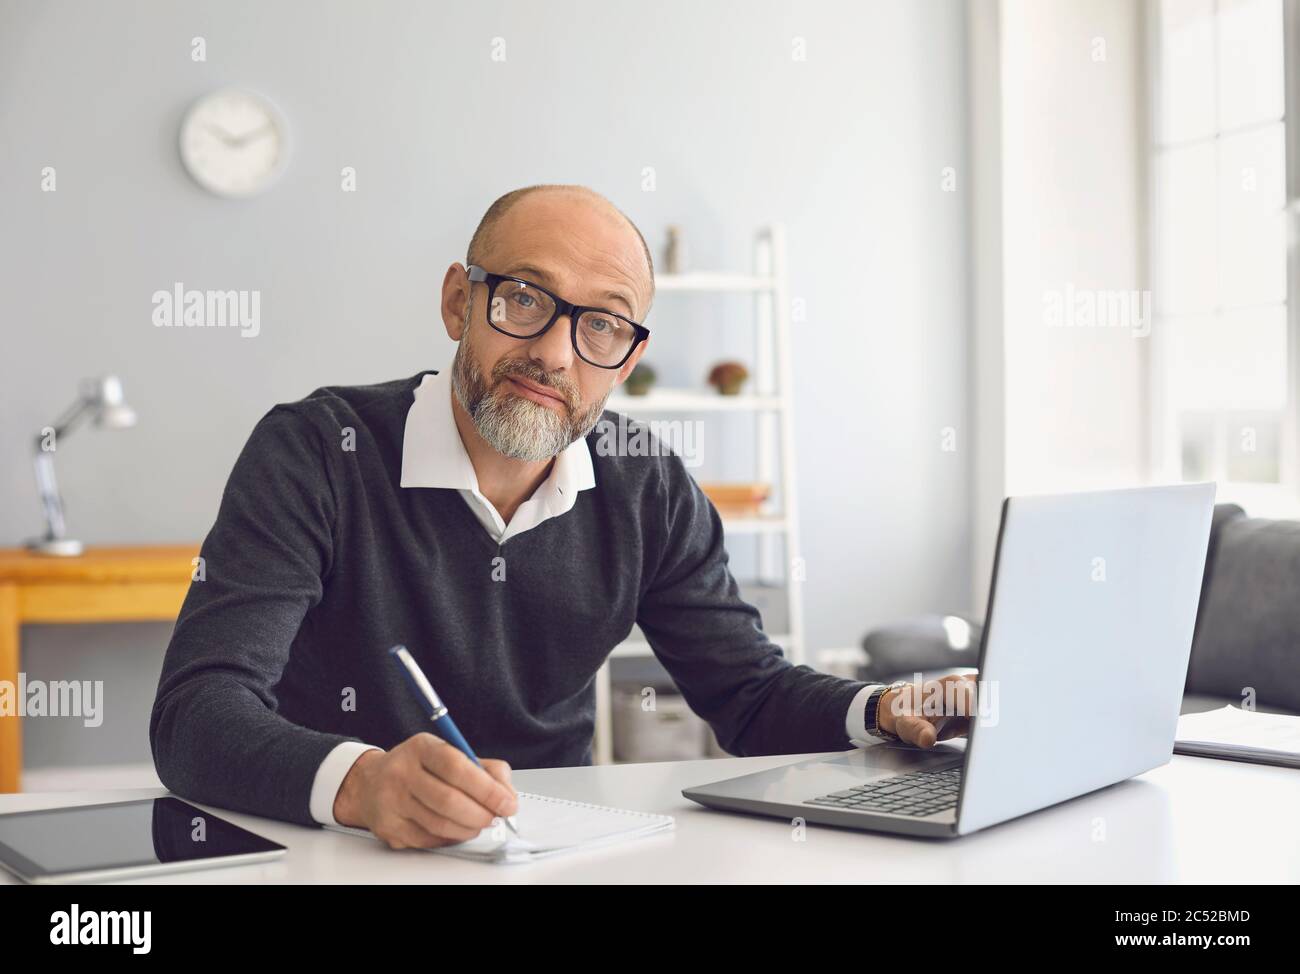 Un uomo anziano con gli occhiali sta lavorando sta studiando ha un laptop che scrive le note in un taccuino mentre siede ad un tavolo nel suo ufficio domestico. Foto Stock